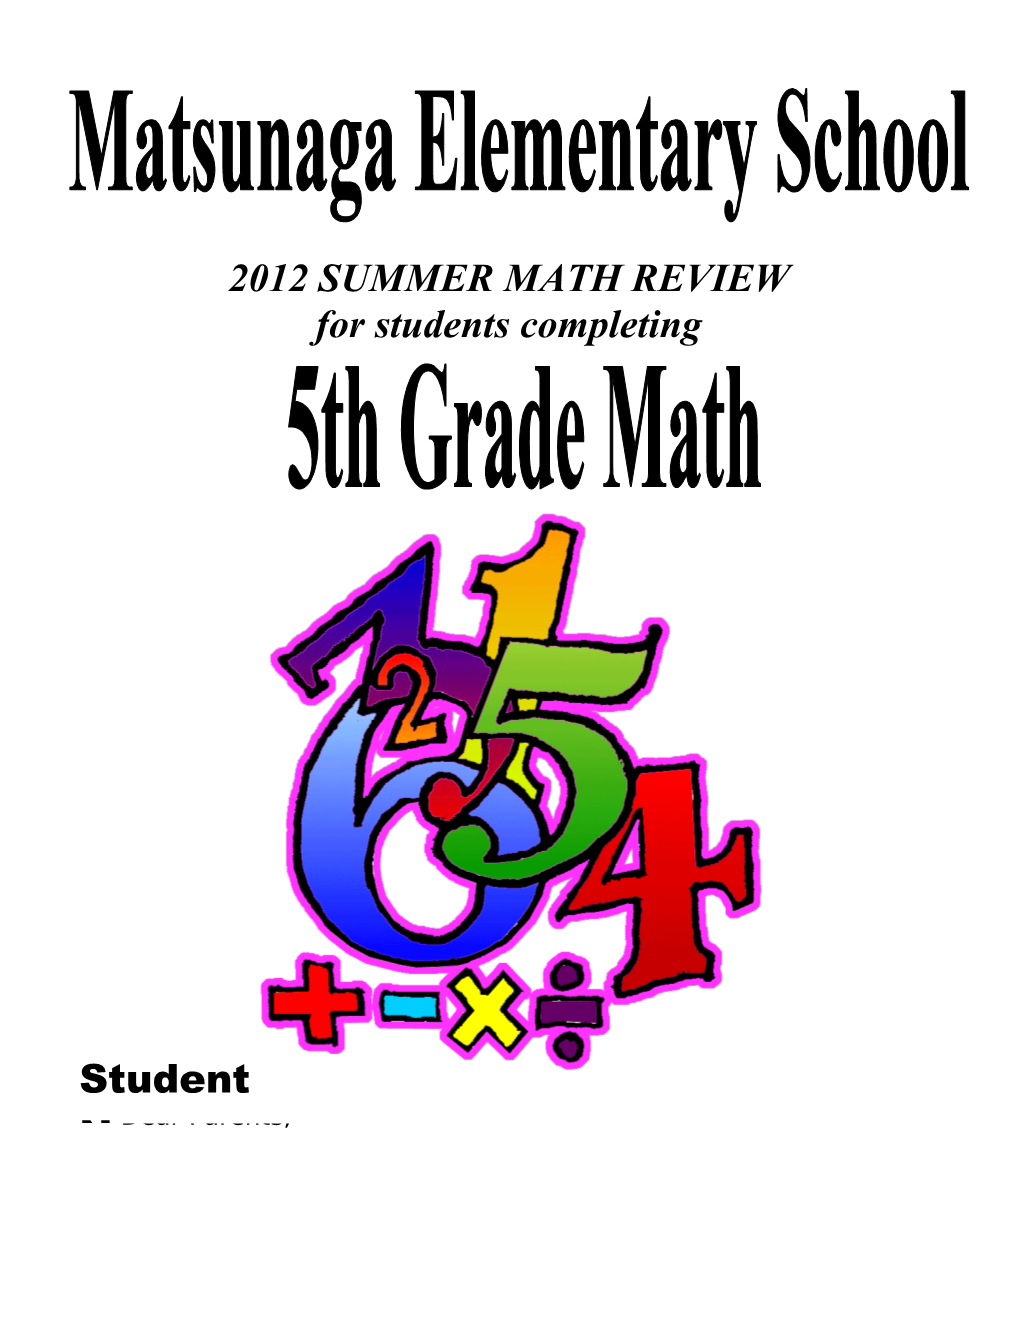 Summer Mathematics Packet s1